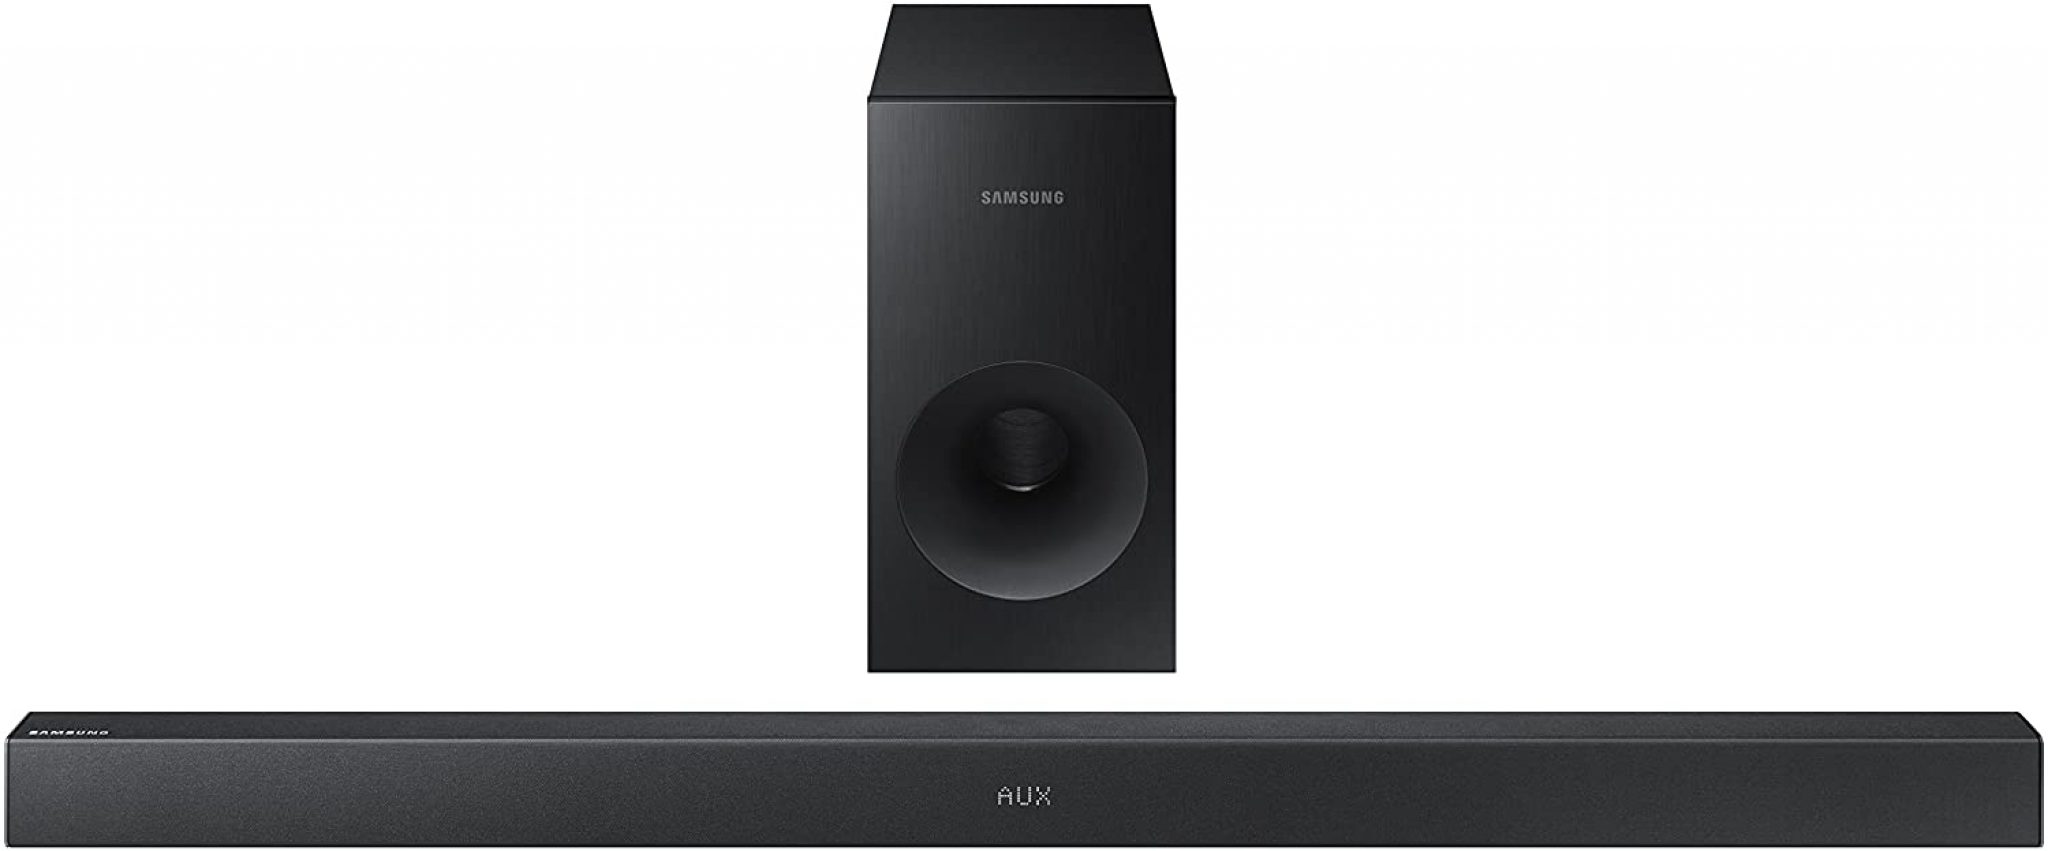 Samsung HW-KM36 Review: Soundbar System For Your Home [2021]